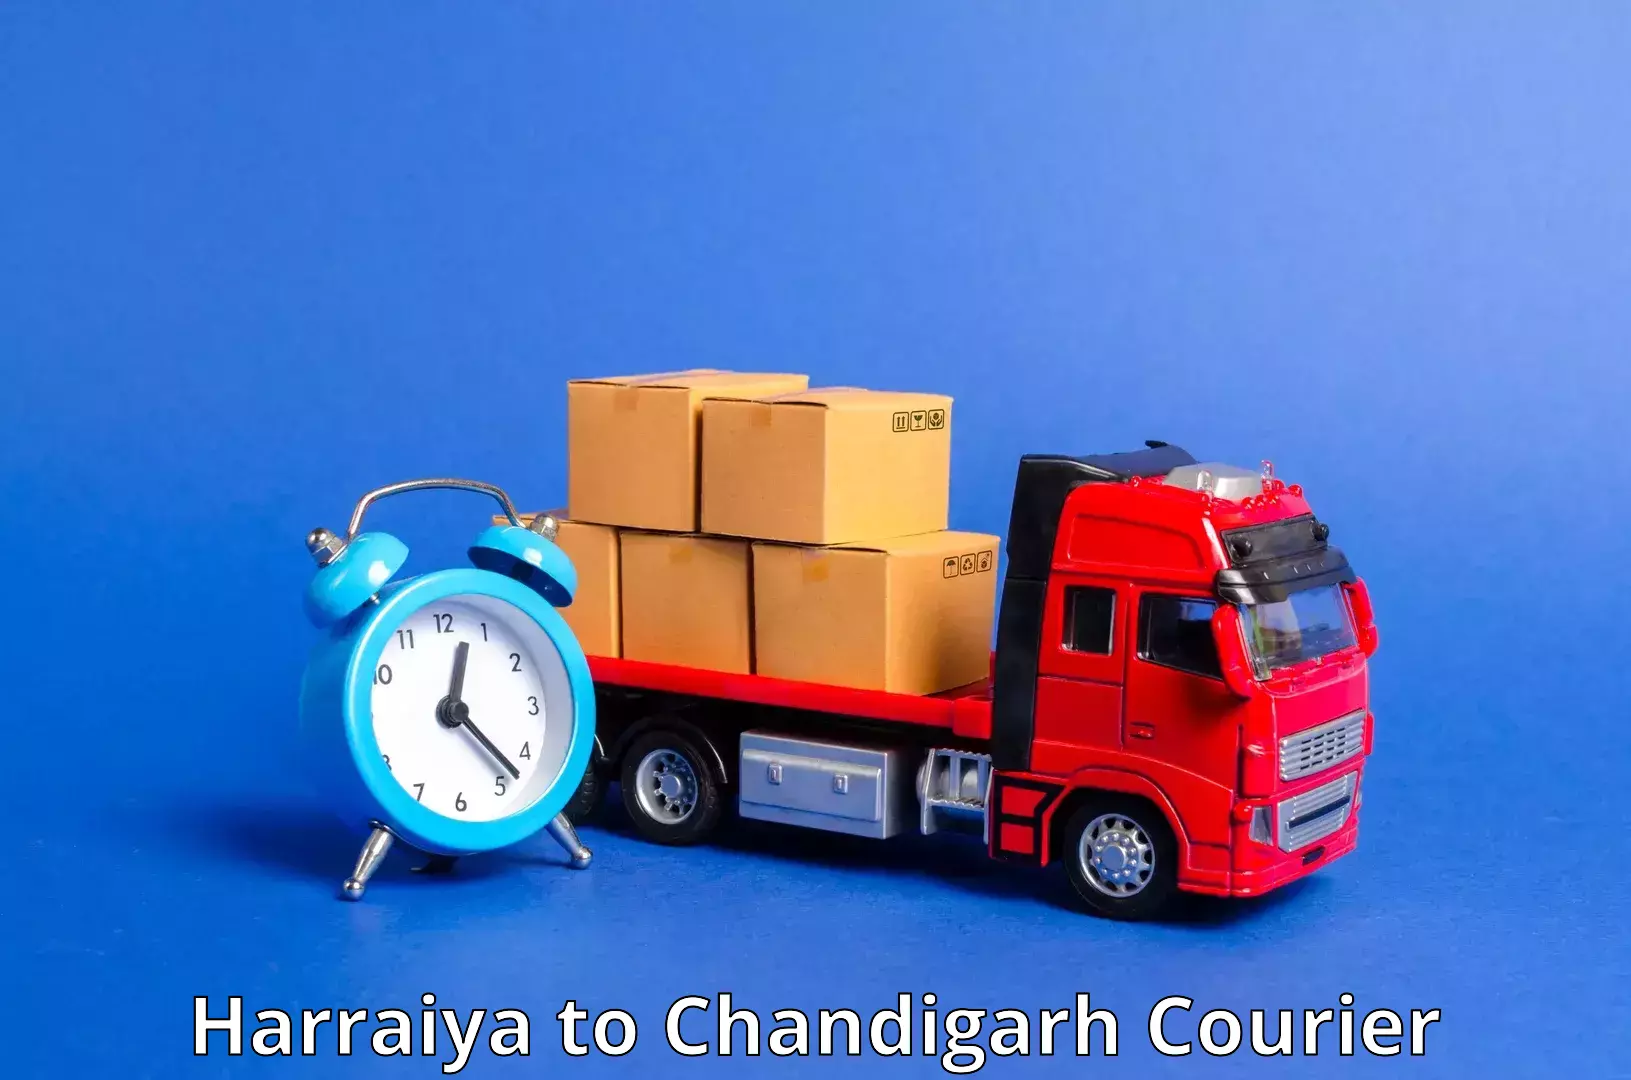 Flexible delivery schedules Harraiya to Chandigarh